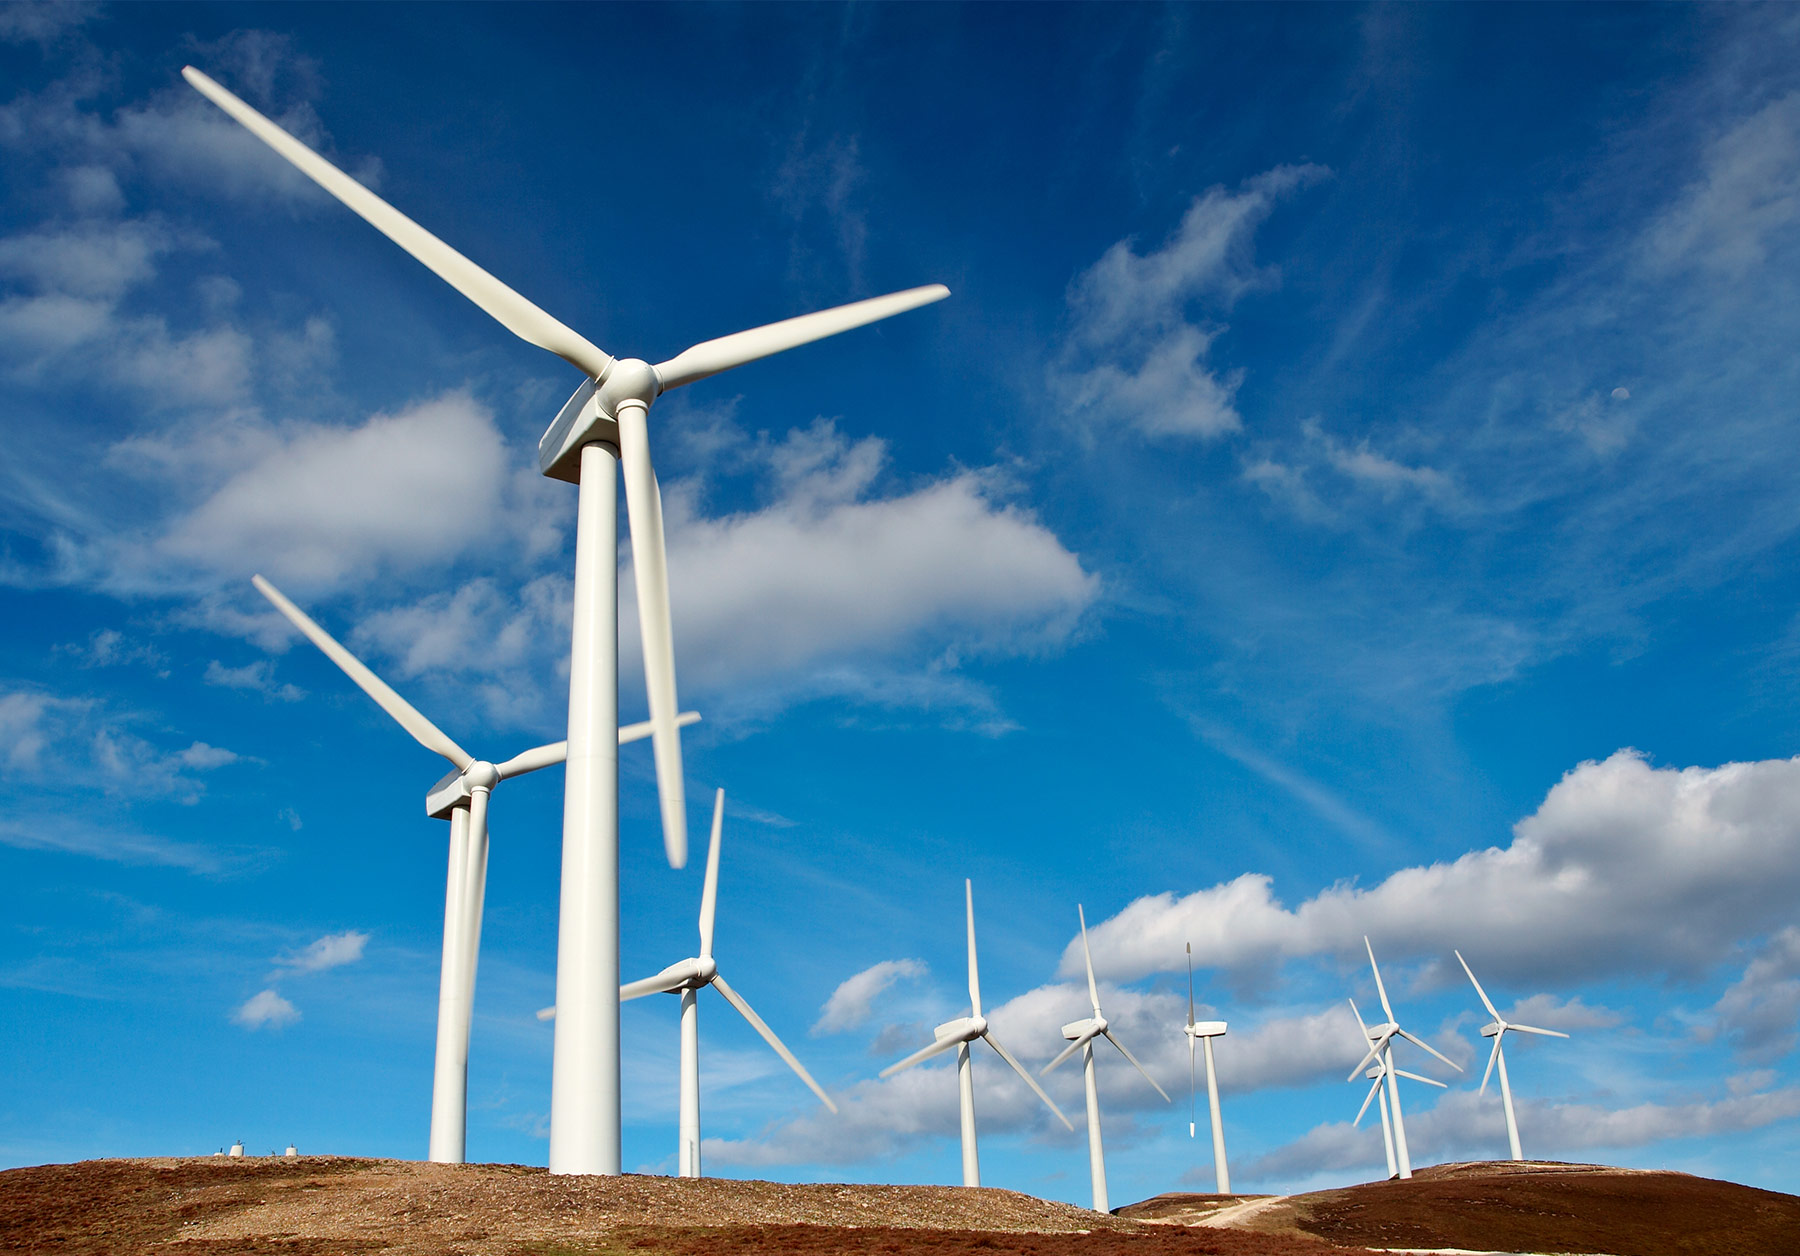 Küresel rüzgar enerjisi kurulu gücü artıyor